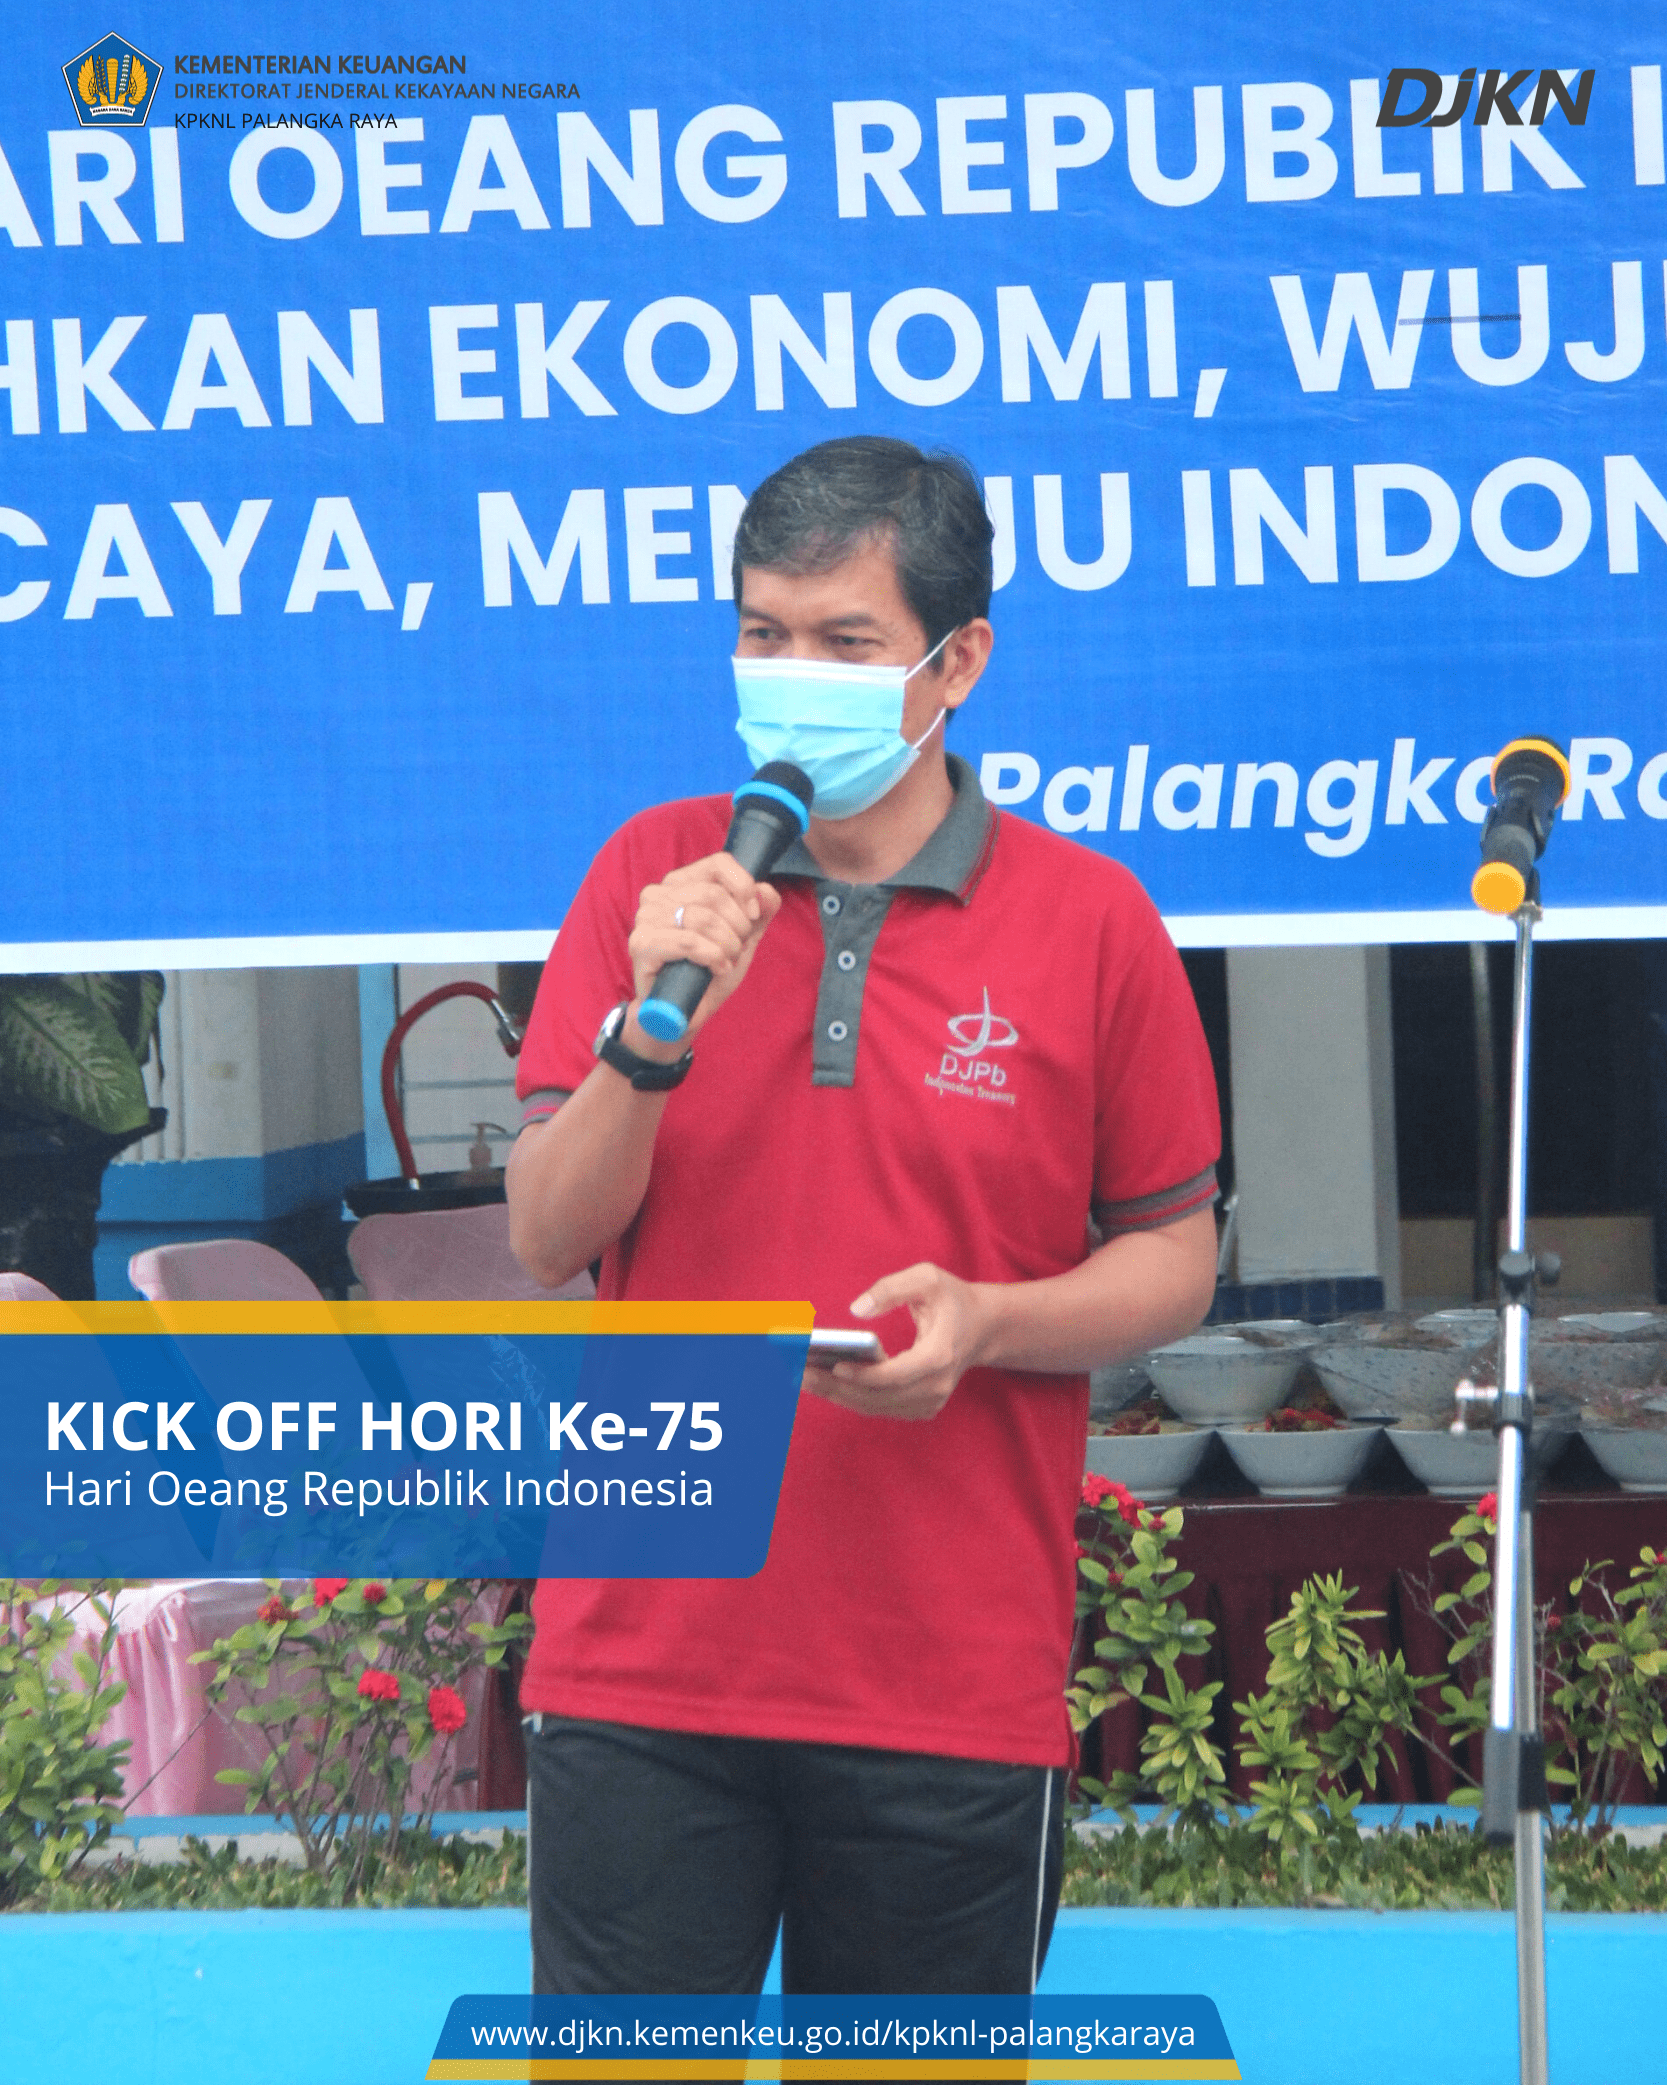 Kick Off Hari Oeang Republik Indonesia (HORI) ke-75